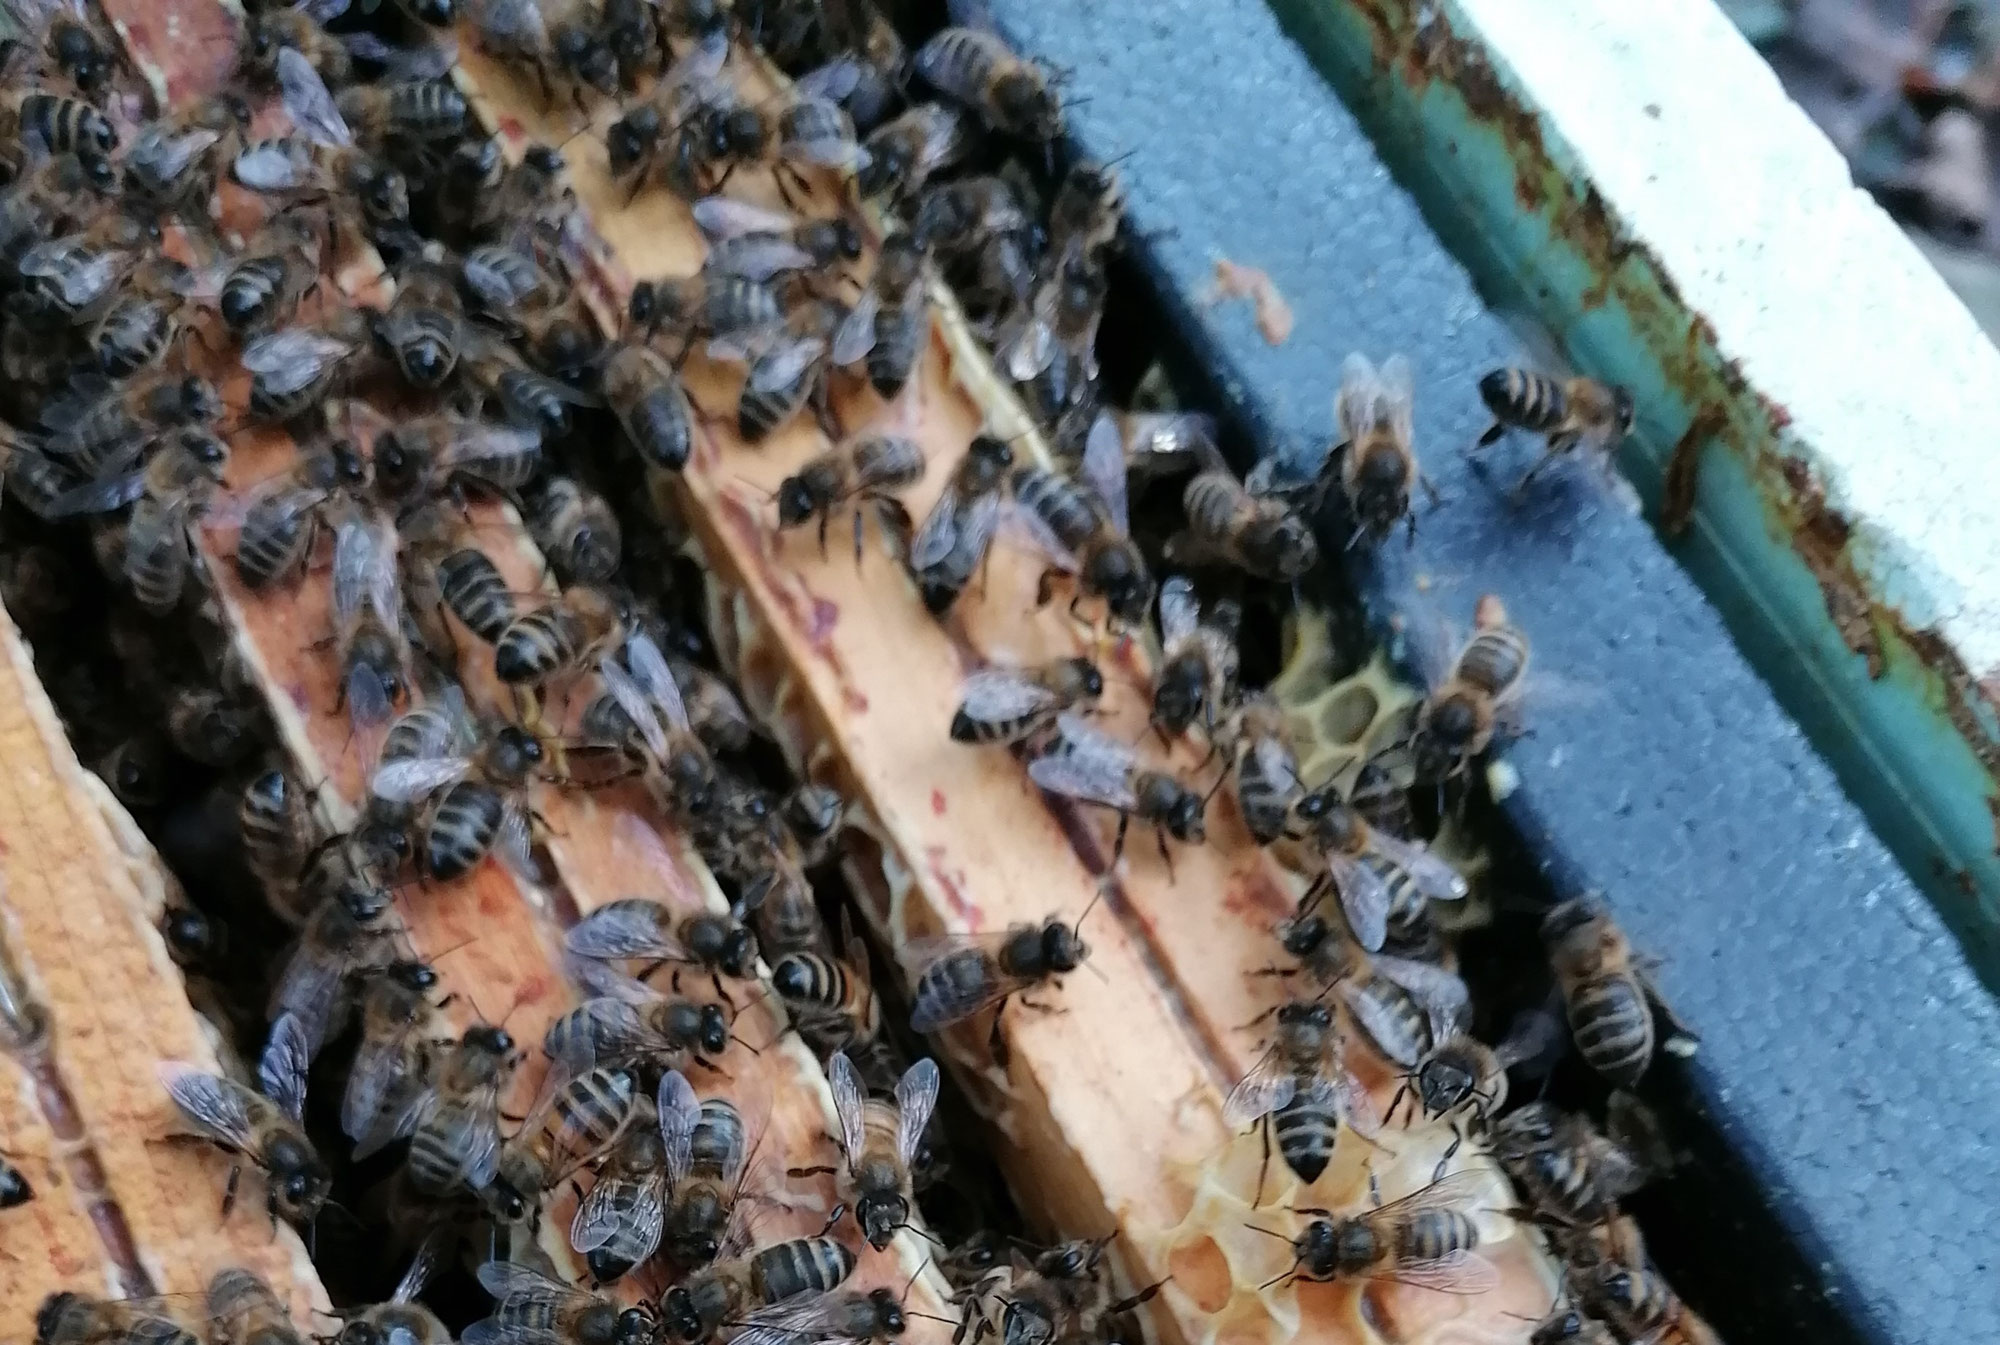 Comment se fait la prophylaxie des abeilles ?